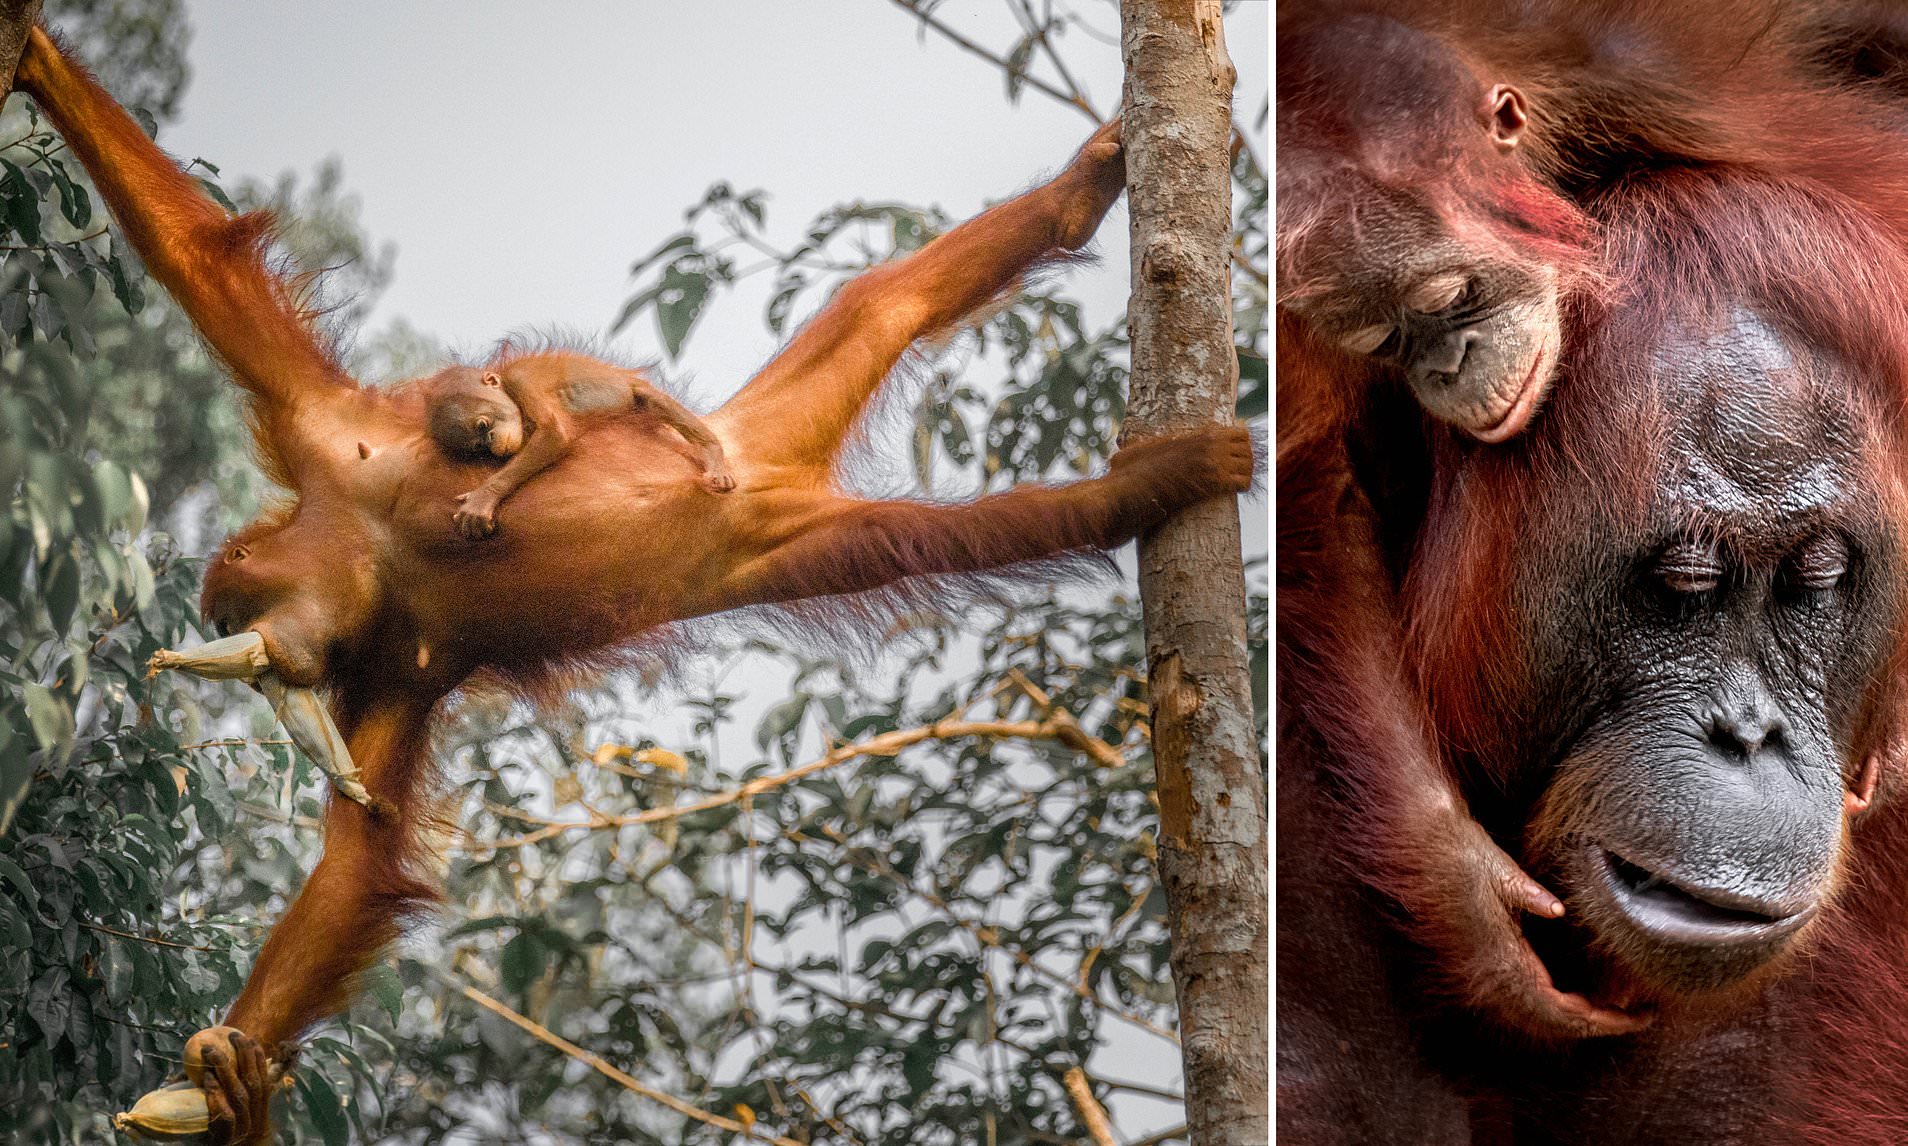 carmel warren recommends 3 orangutans 1 blender video pic